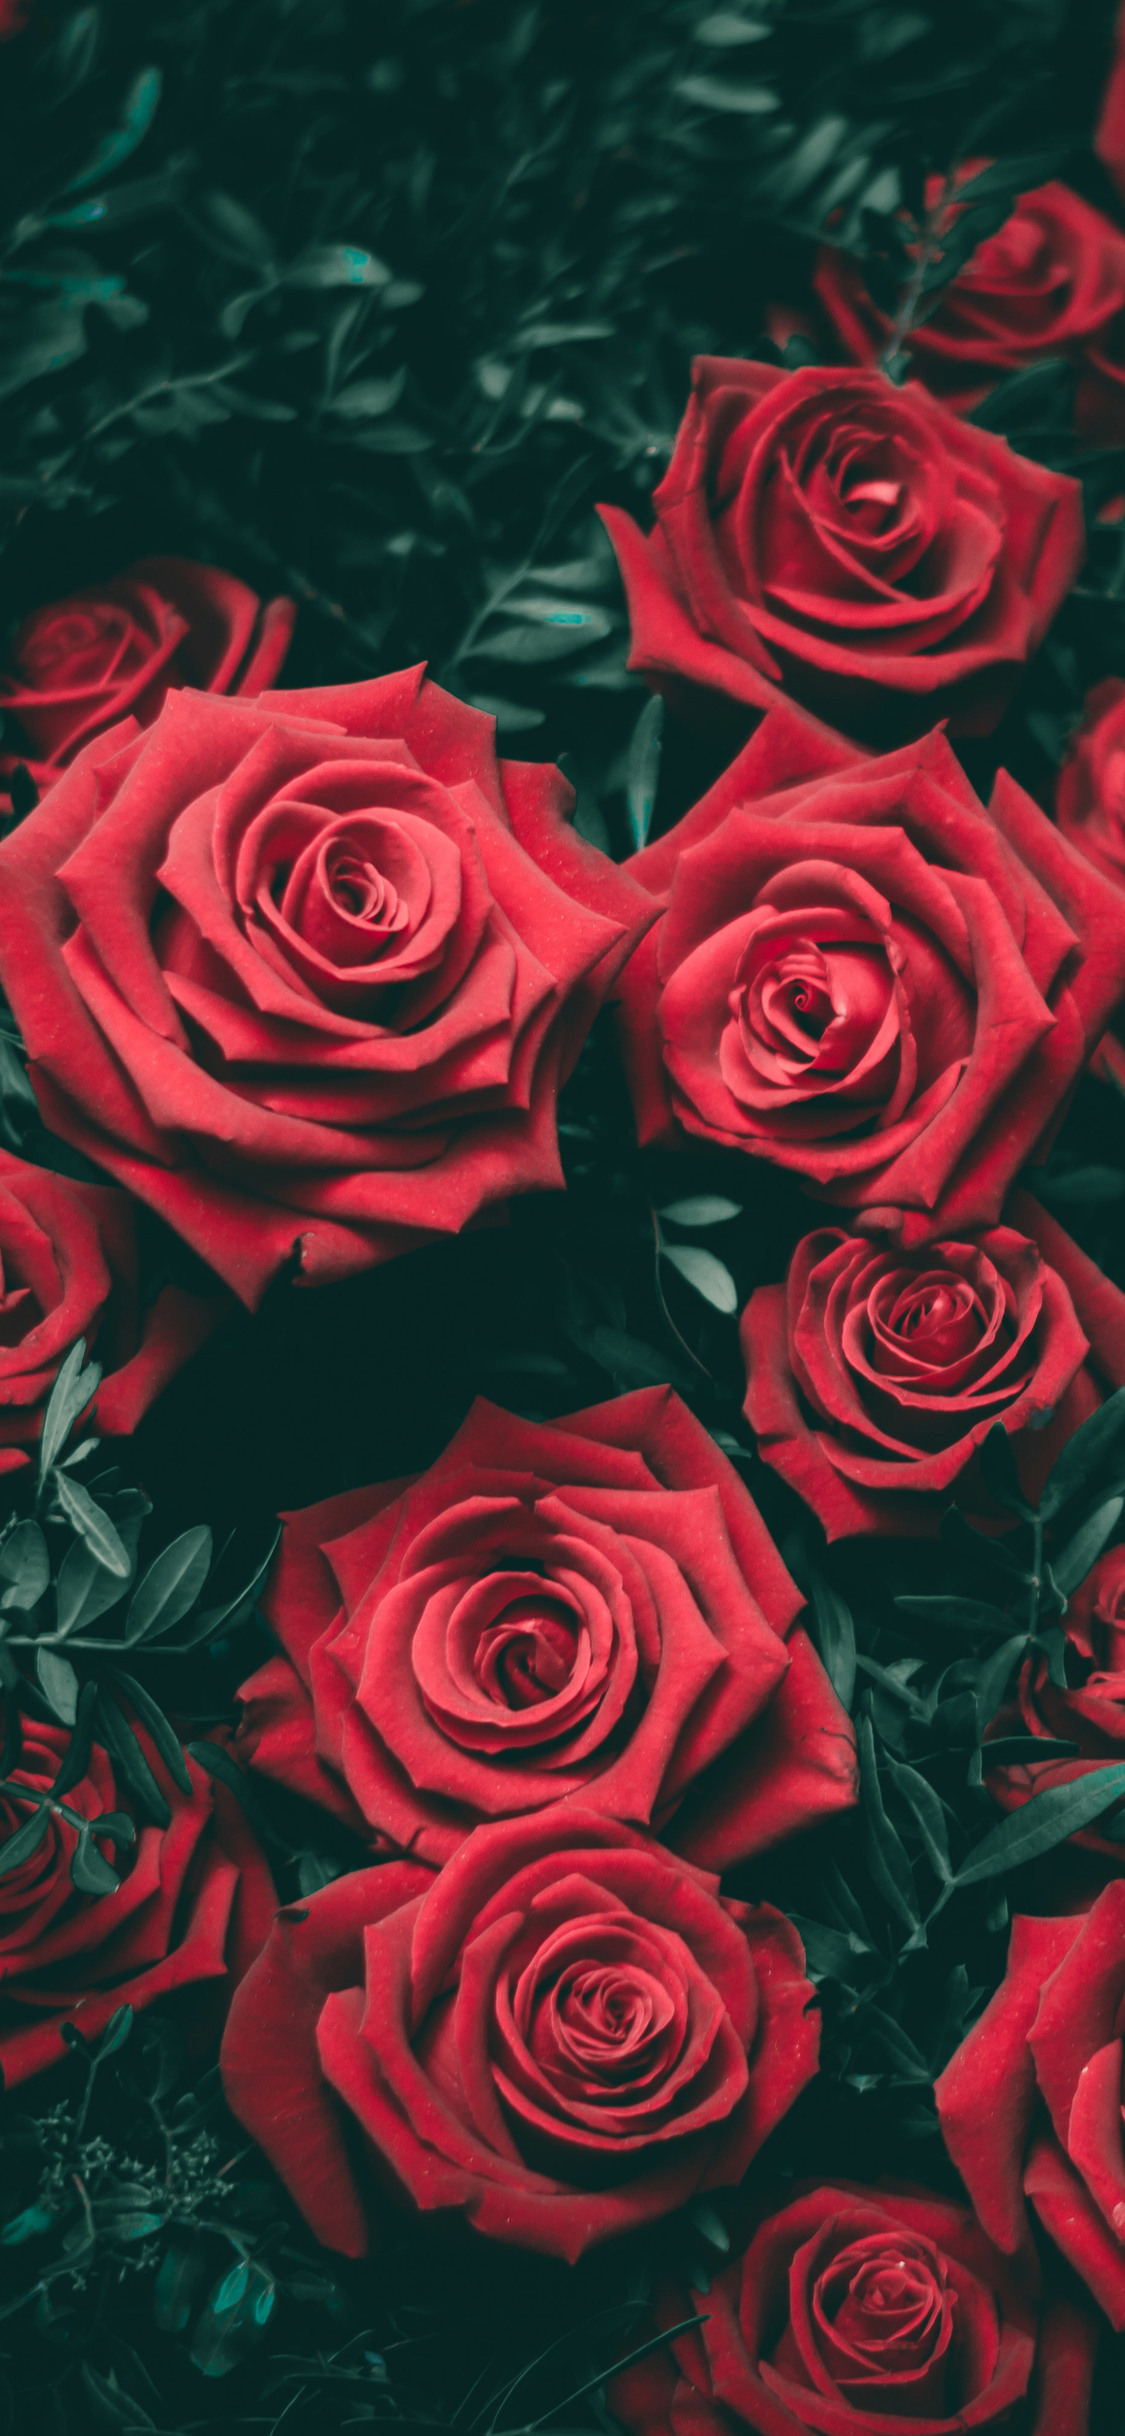 Hình nền hoa hồng cho iphone xs, xs max